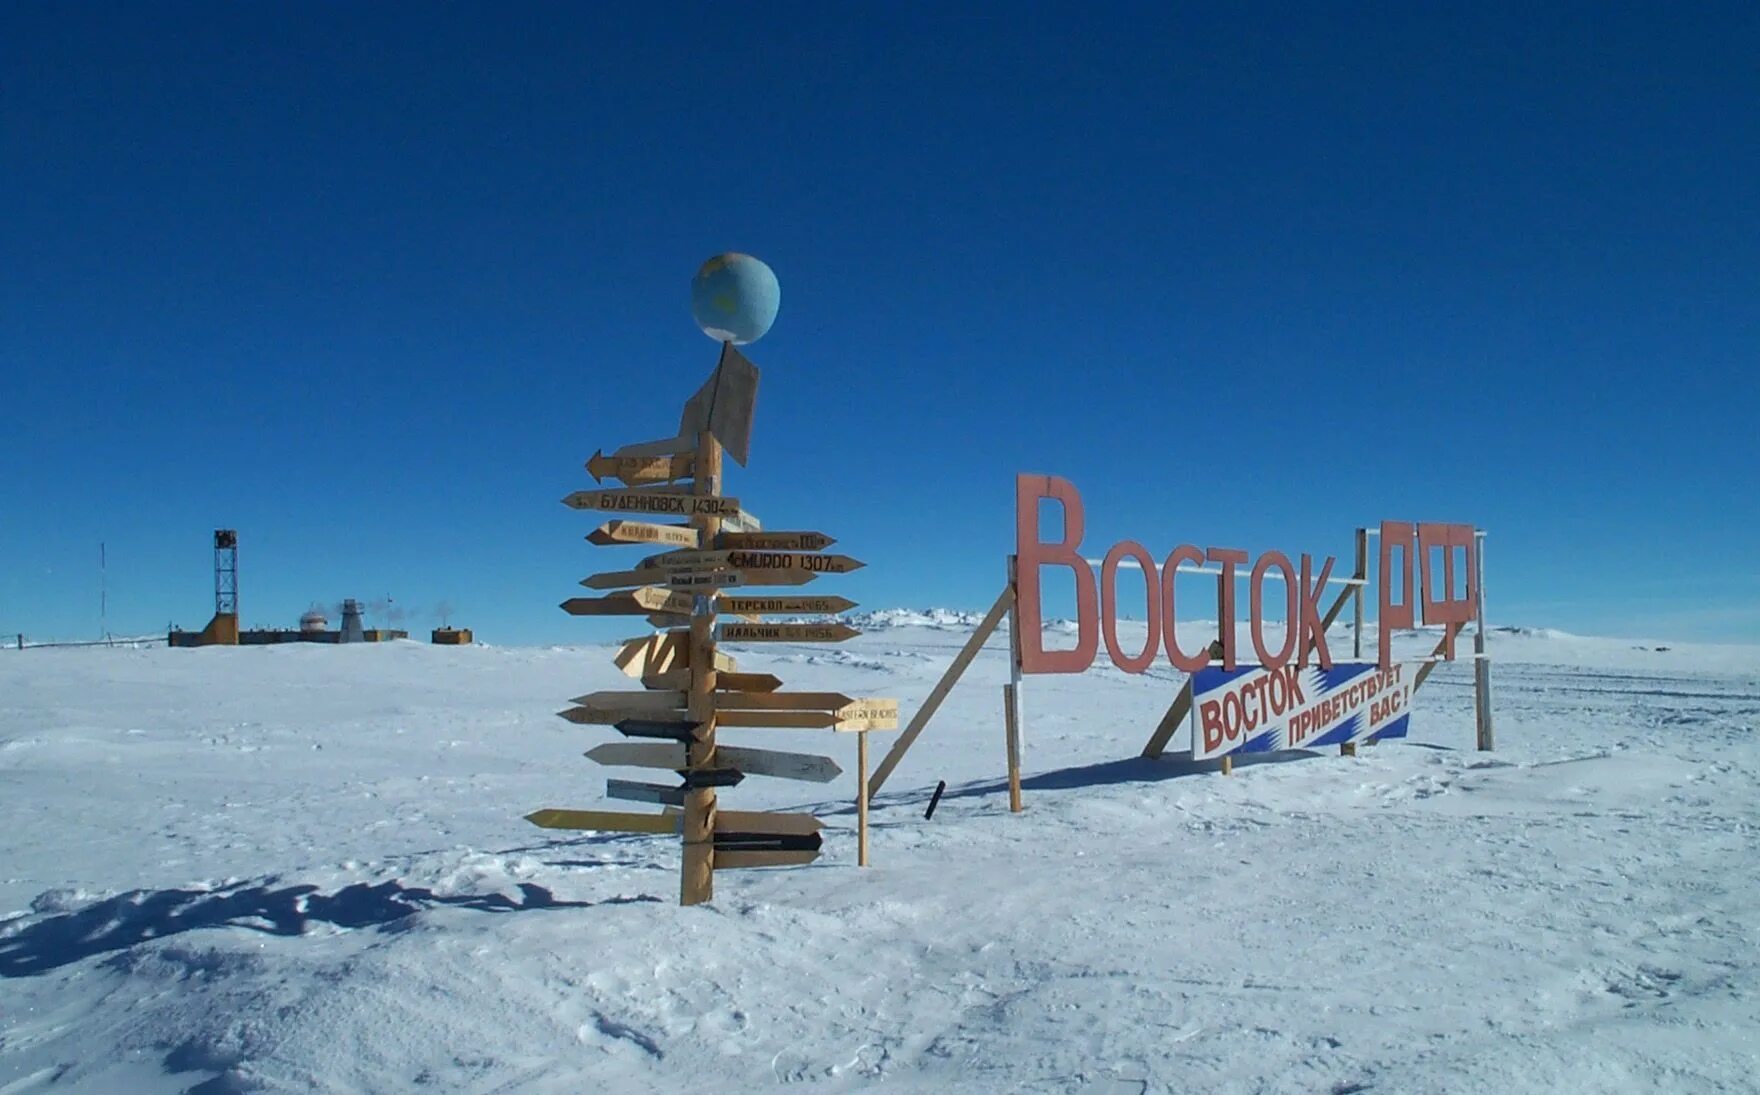 Самая низкая температура воздуха была зарегистрирована. Полярная станция Восток в Антарктиде. Российская антарктическая научная станция Восток. Советская Арктическая станция Восток. Восток 2 Полярная станция.